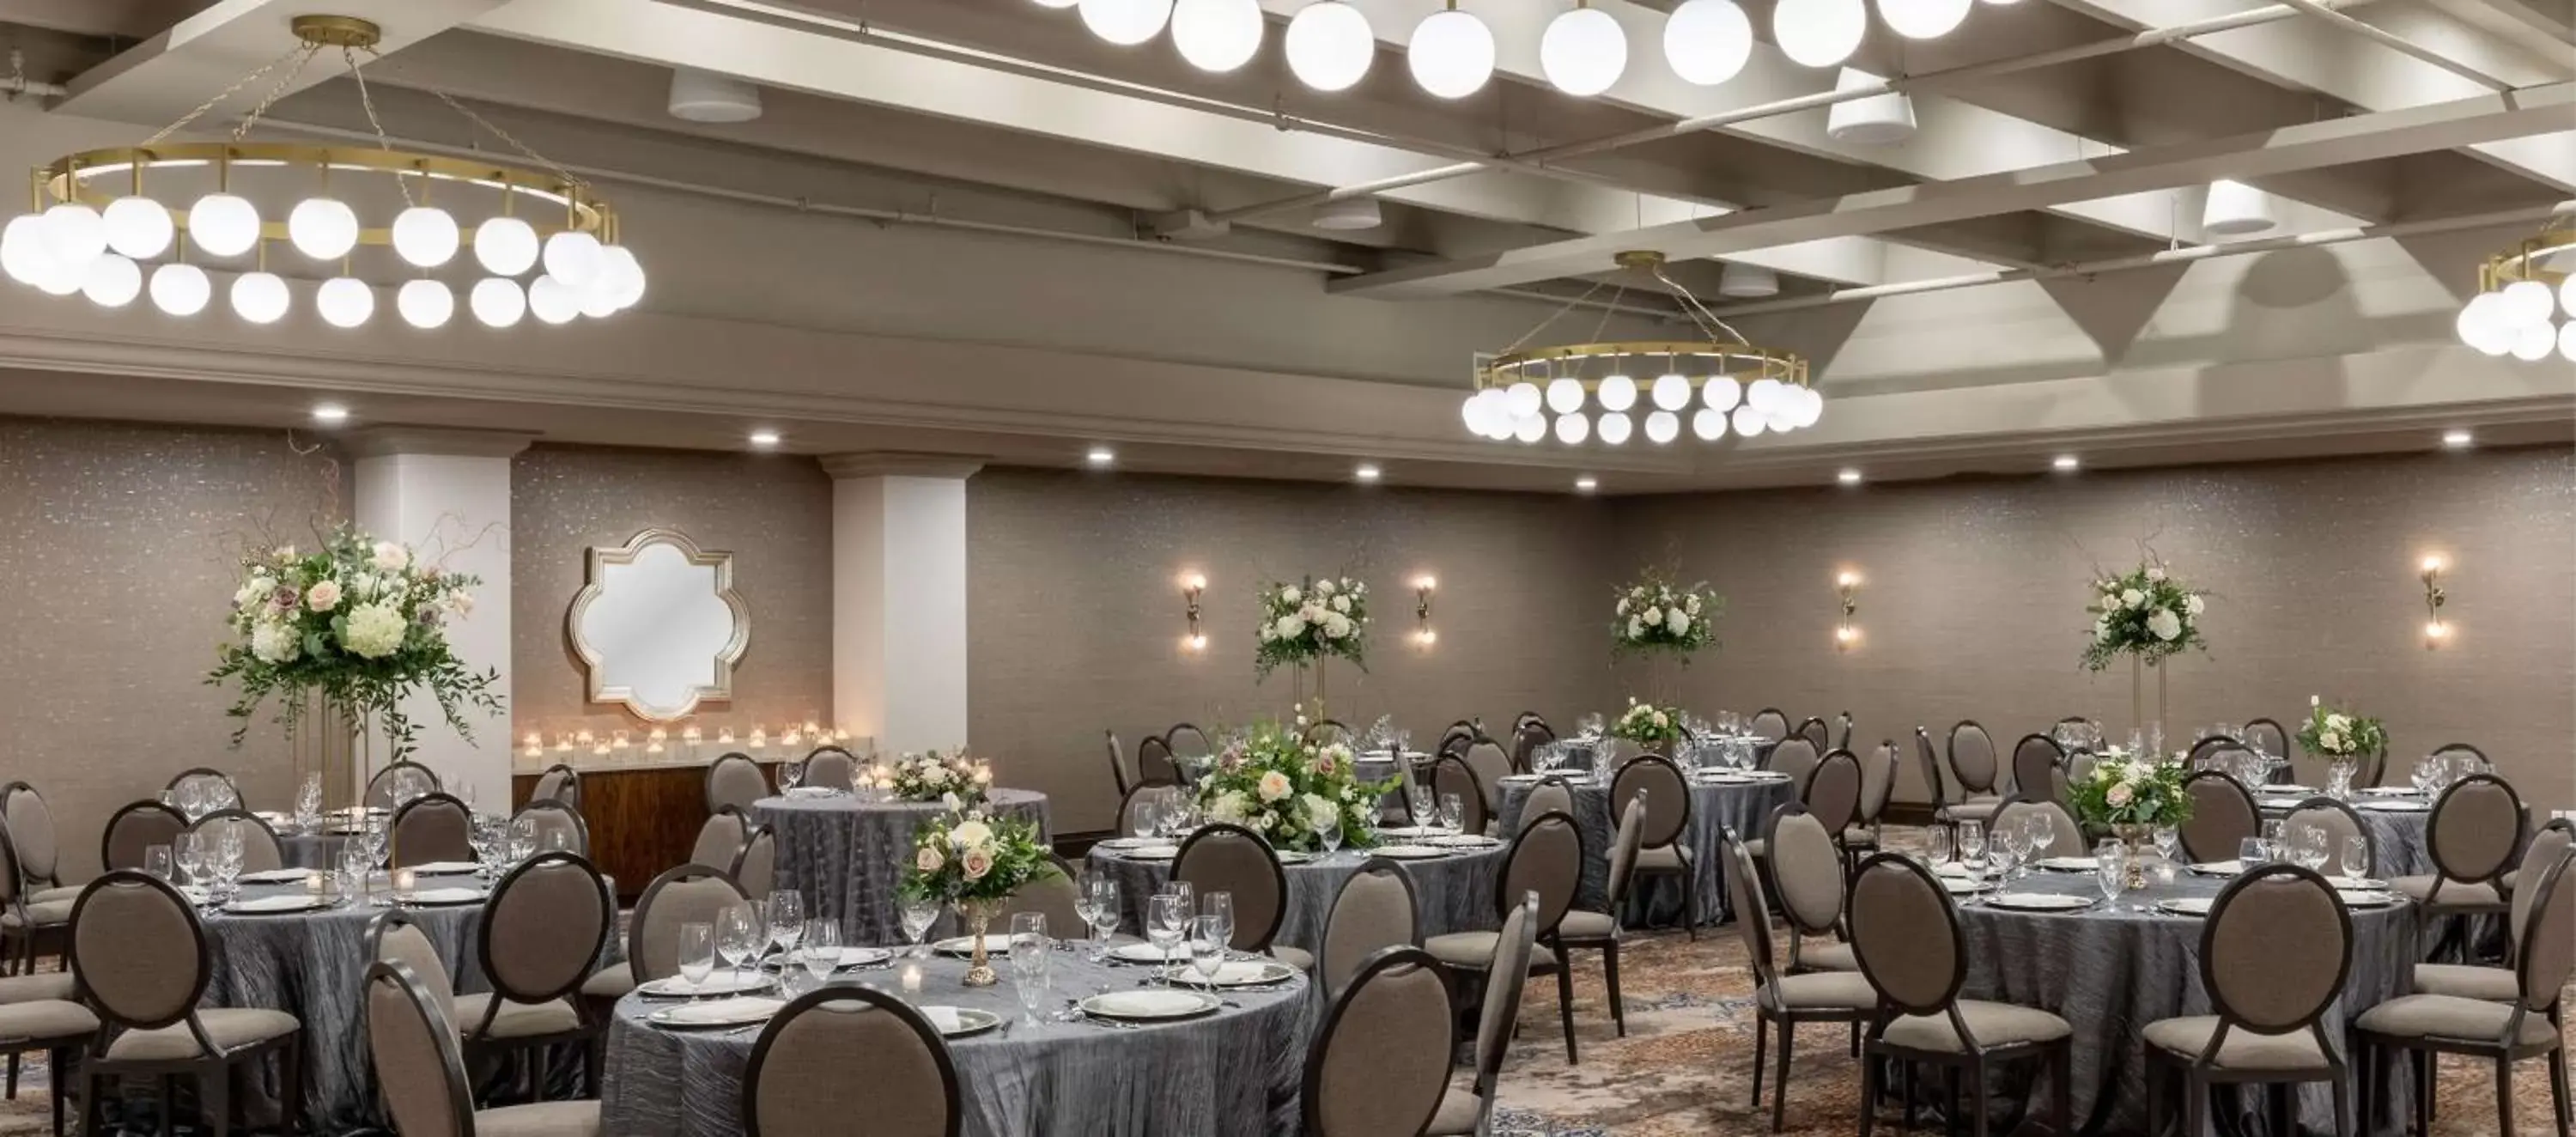 Meeting/conference room, Banquet Facilities in Estancia del Norte San Antonio, A Tapestry Hotel by Hilton